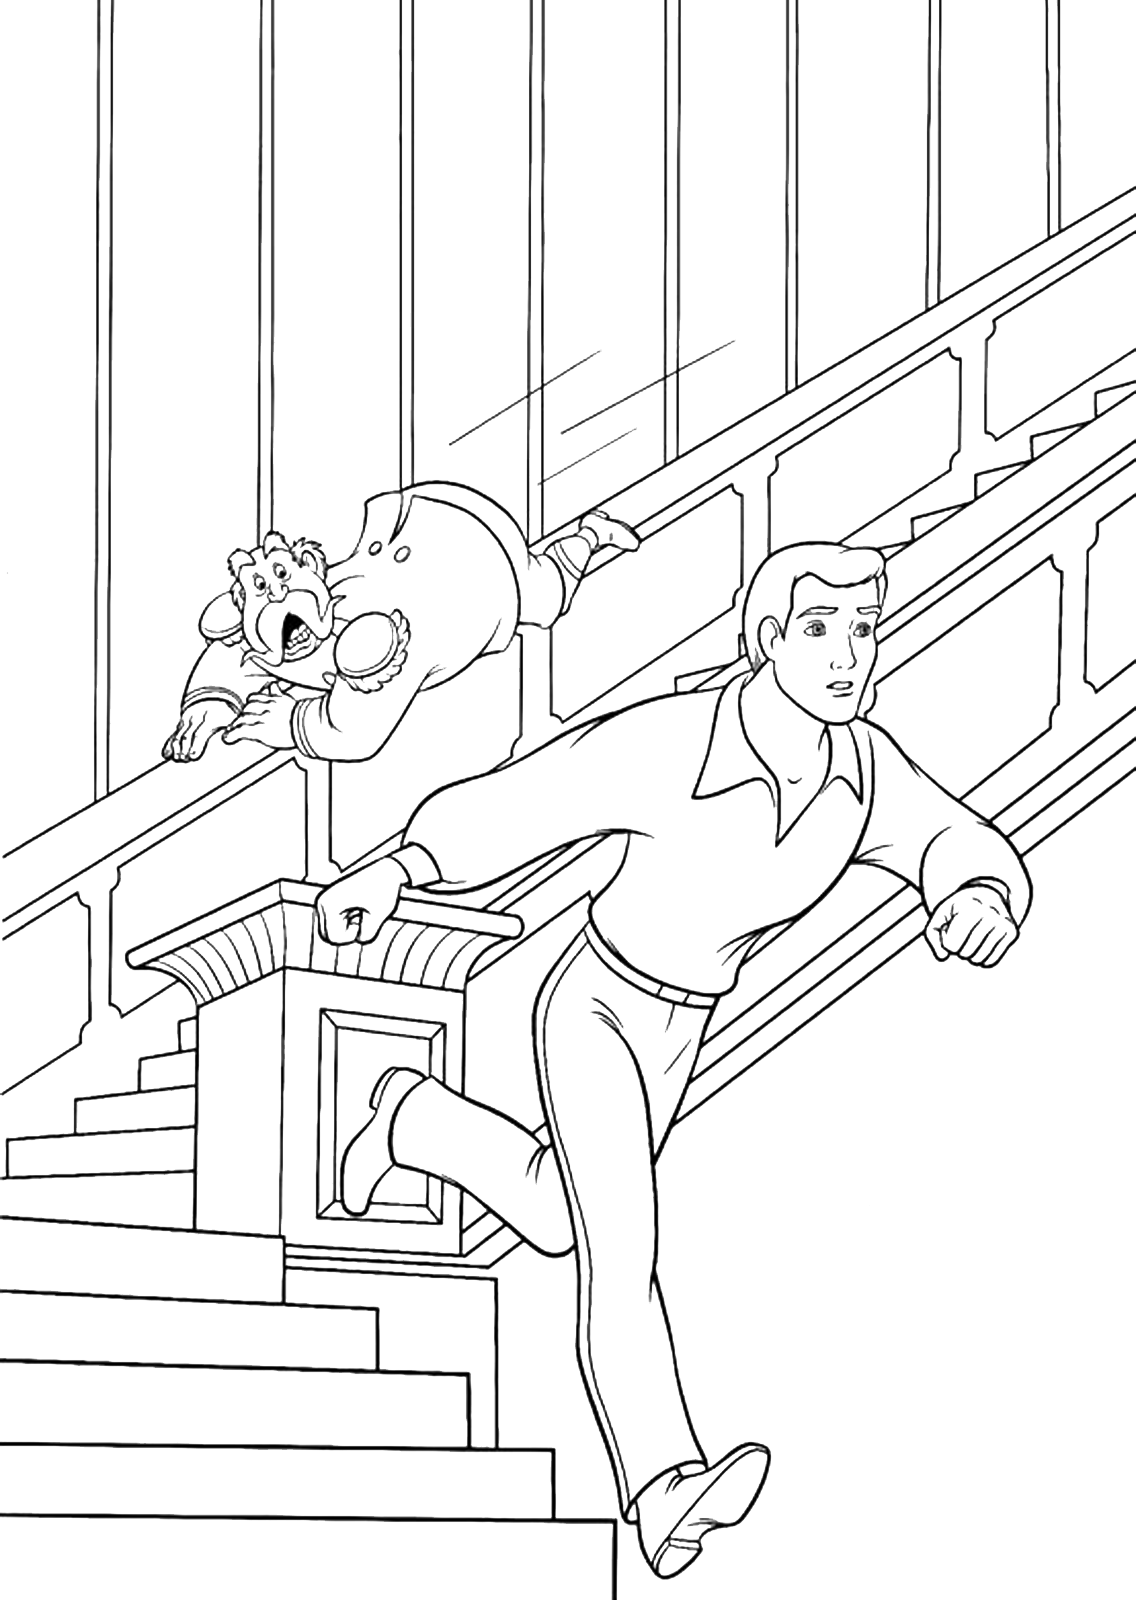 Cenerentola - Il Re lancia giù dalle scale per fermare il Principe